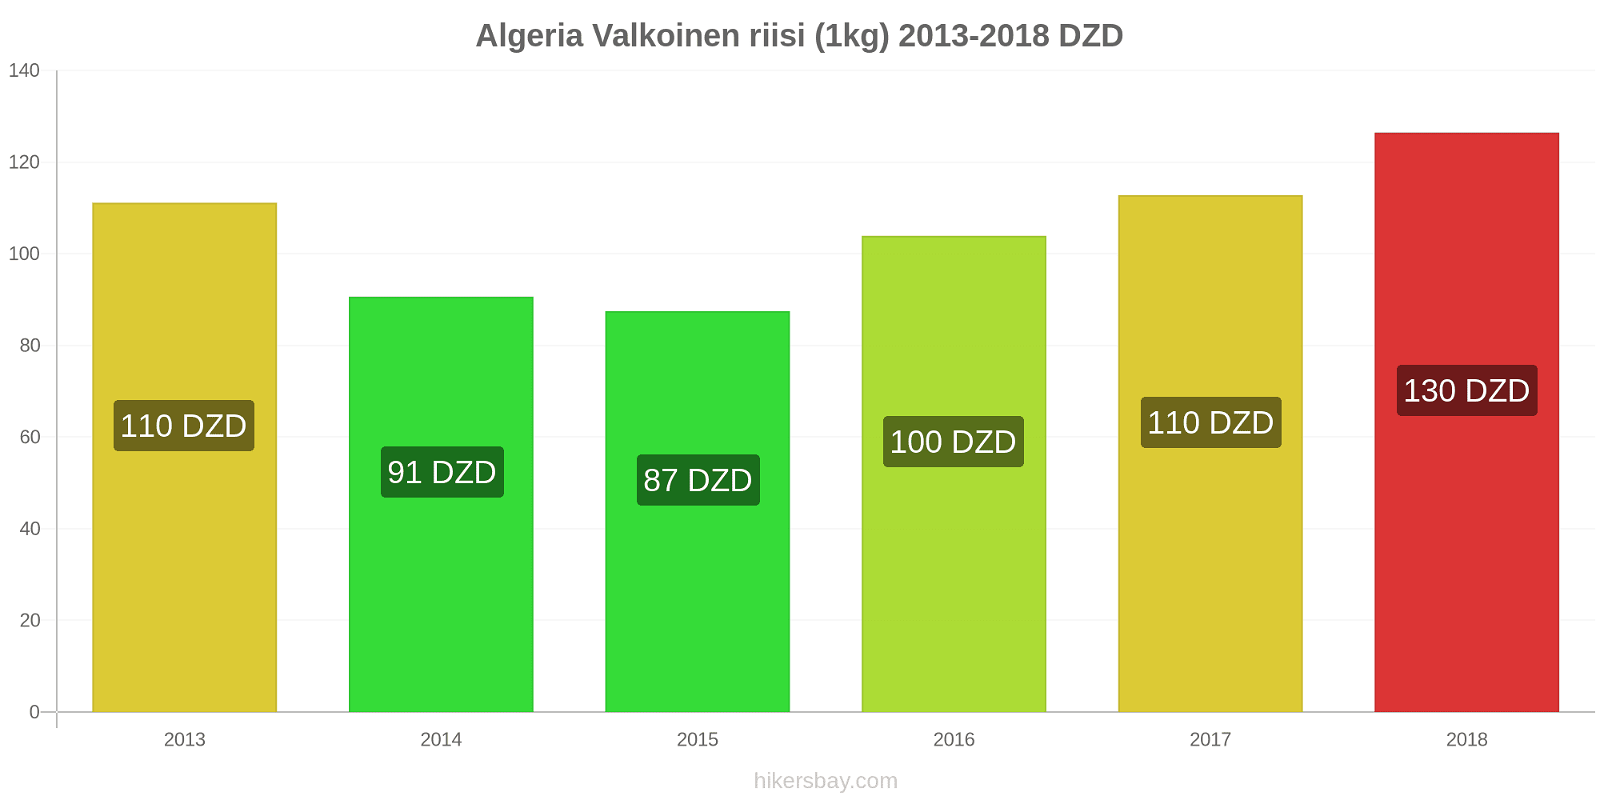 Algeria hintojen muutokset Valkoinen riisi (1kg) hikersbay.com